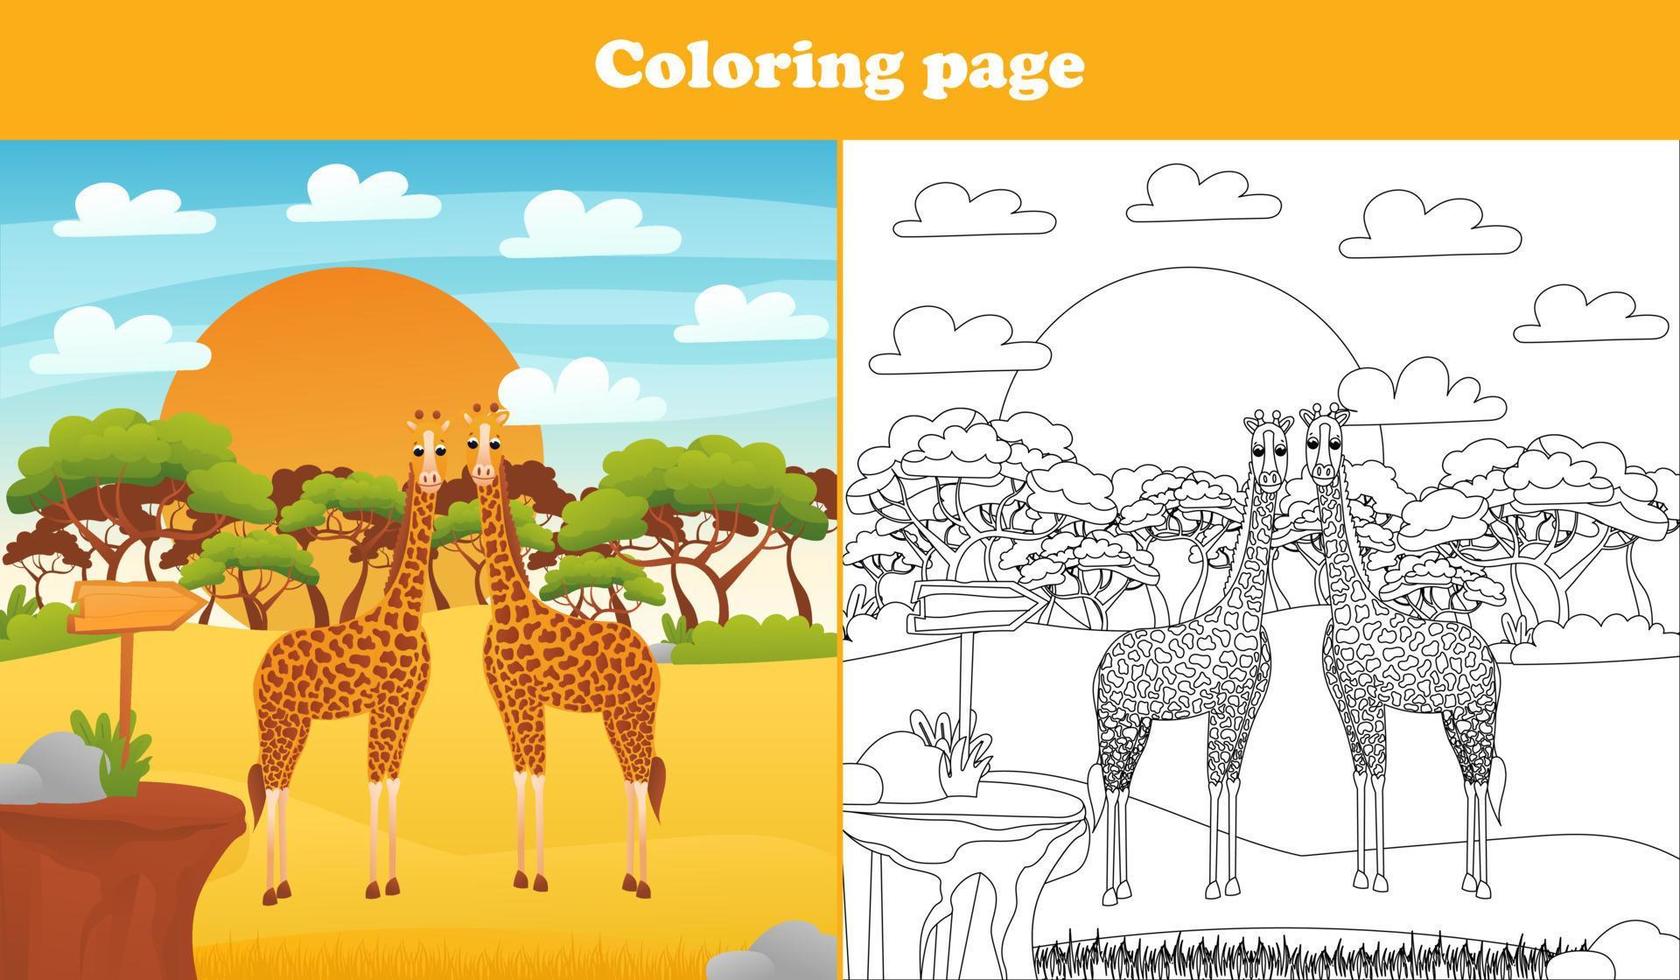 paisaje desértico de safari para niños con lindos personajes animales - jirafas, página para colorear para libros infantiles, hoja de trabajo imprimible en estilo de dibujos animados para la escuela, tema de la vida silvestre animal vector